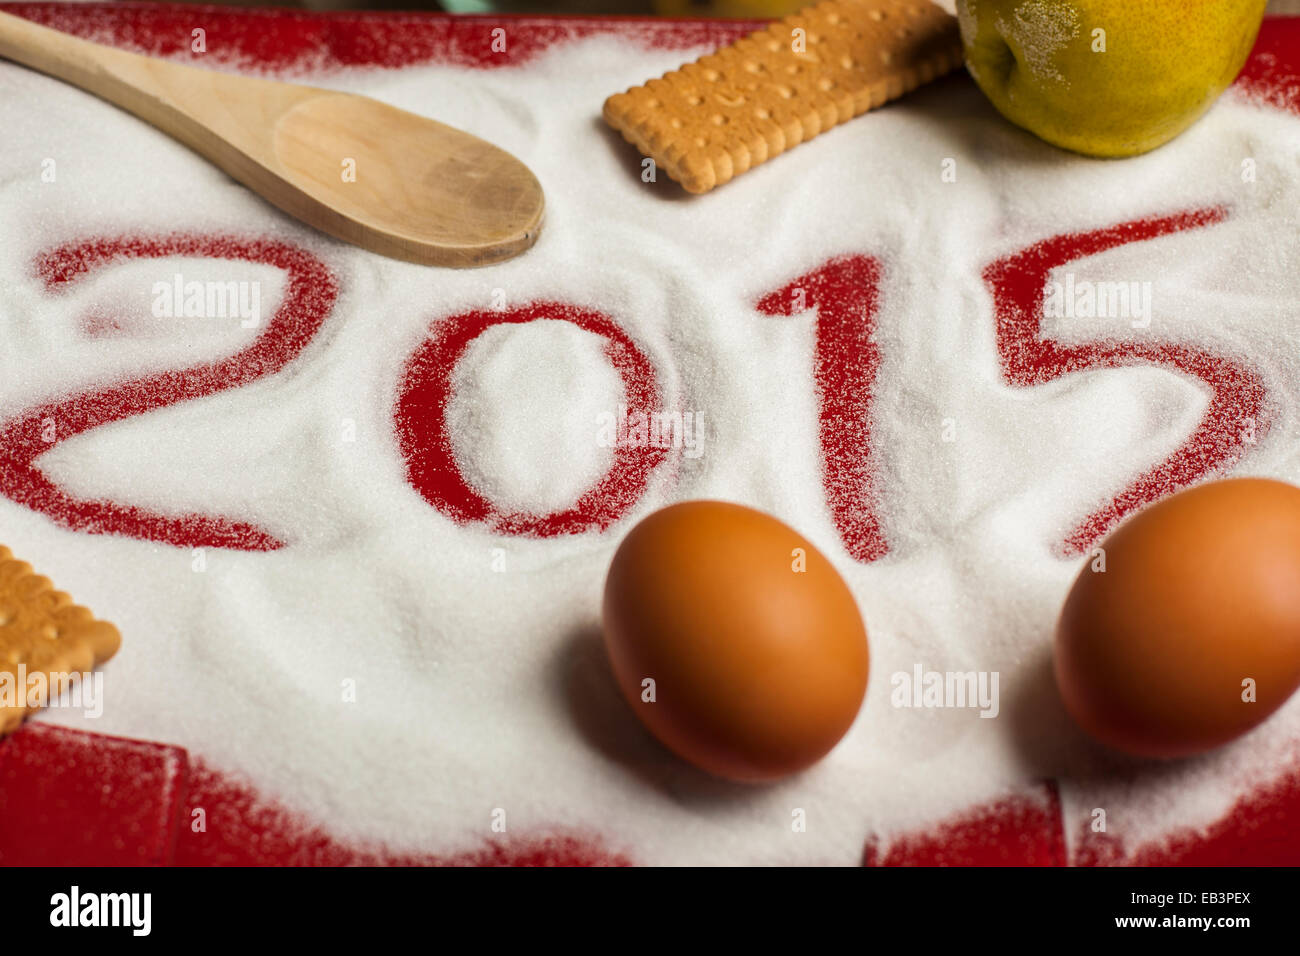 Navidad roja signo de un arbol de navidad 2015 dibujar en el azúcar con alimentos, huevos, galletas, bizcochos, culinaria, arte, fotografía de paisaje Foto de stock